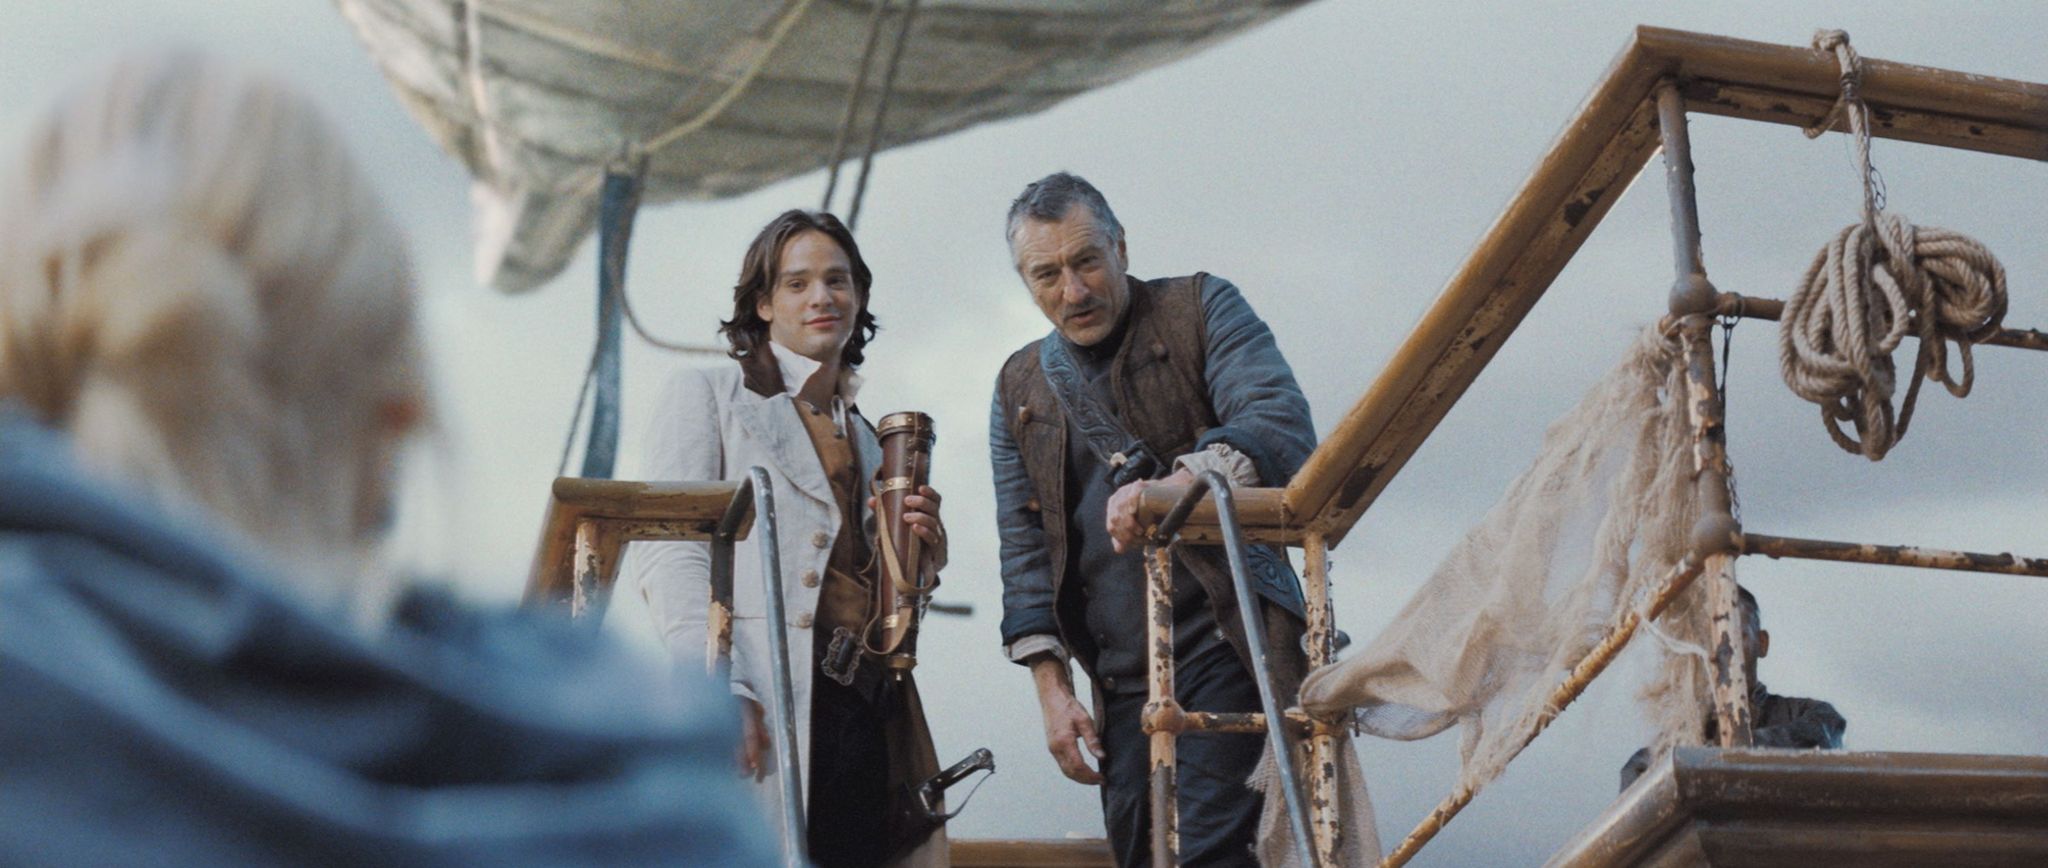 Still of Robert De Niro and Charlie Cox in Zvaigzdziu dulkes (2007)